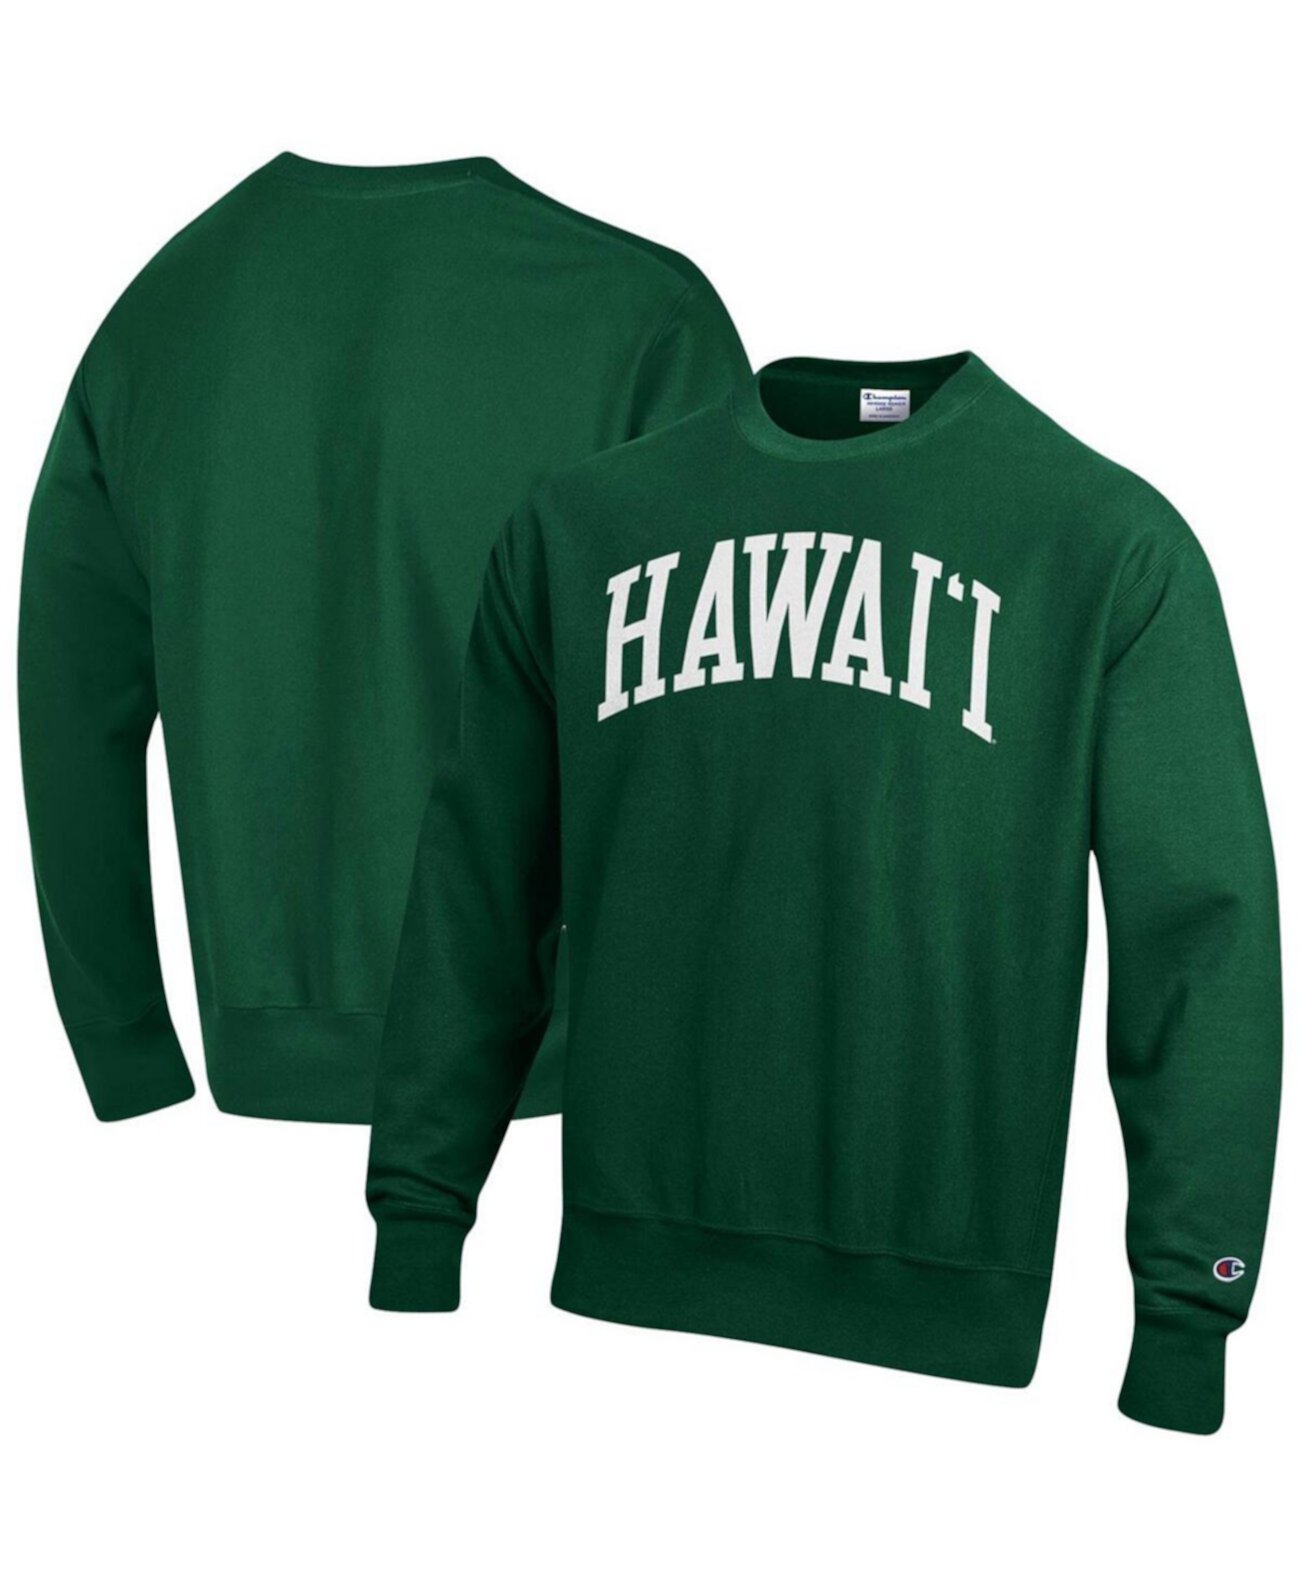 Мужской зеленый пуловер Hawaii Warriors Arch обратного переплетения свитшот Champion